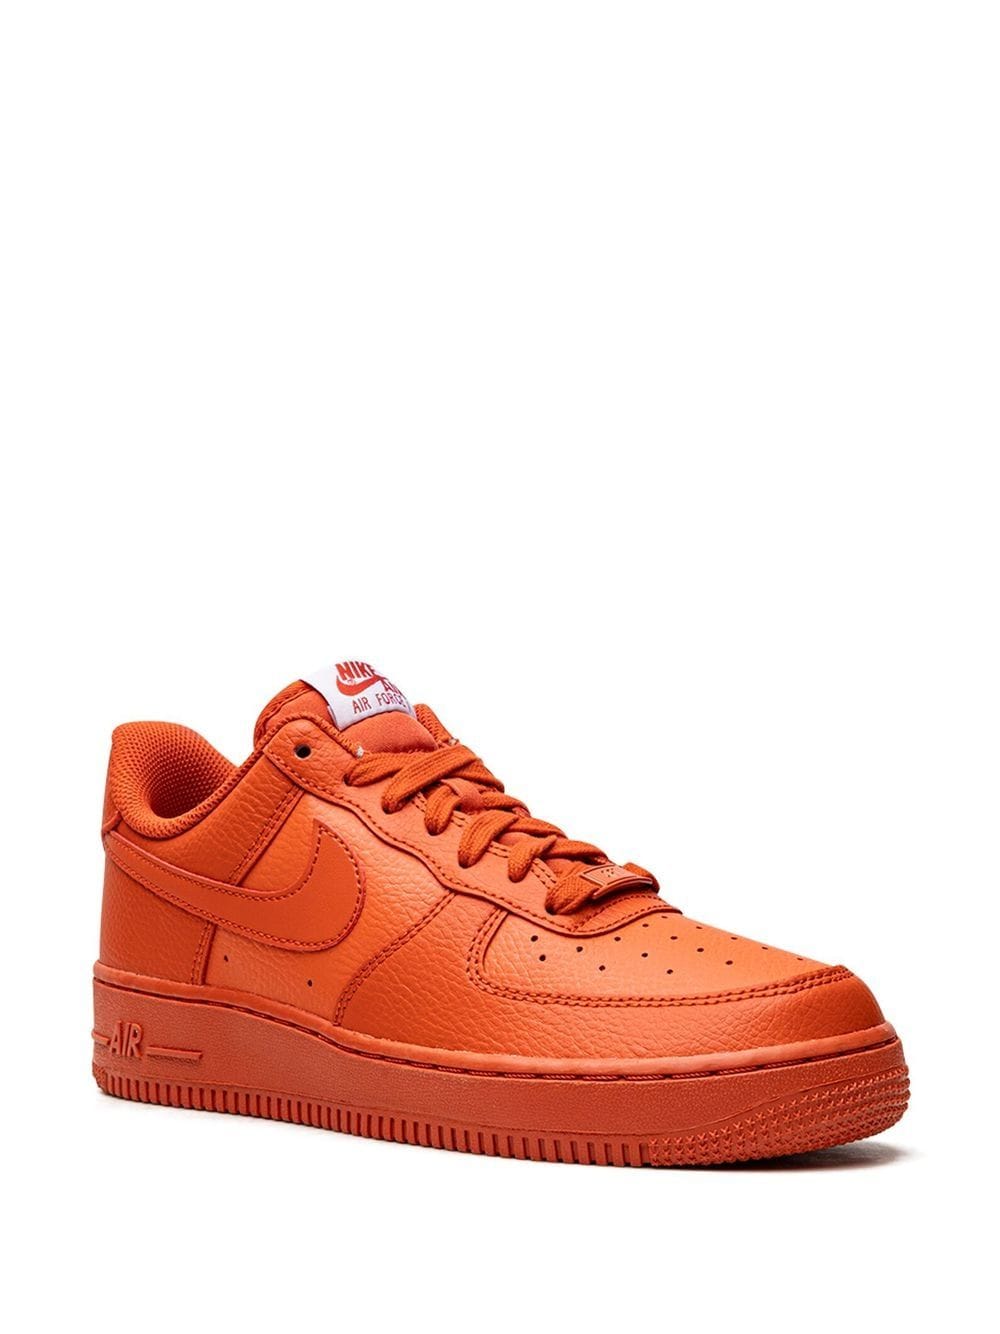 Shop Nike Air Force 1 '07 "triple Orange" Sneakers